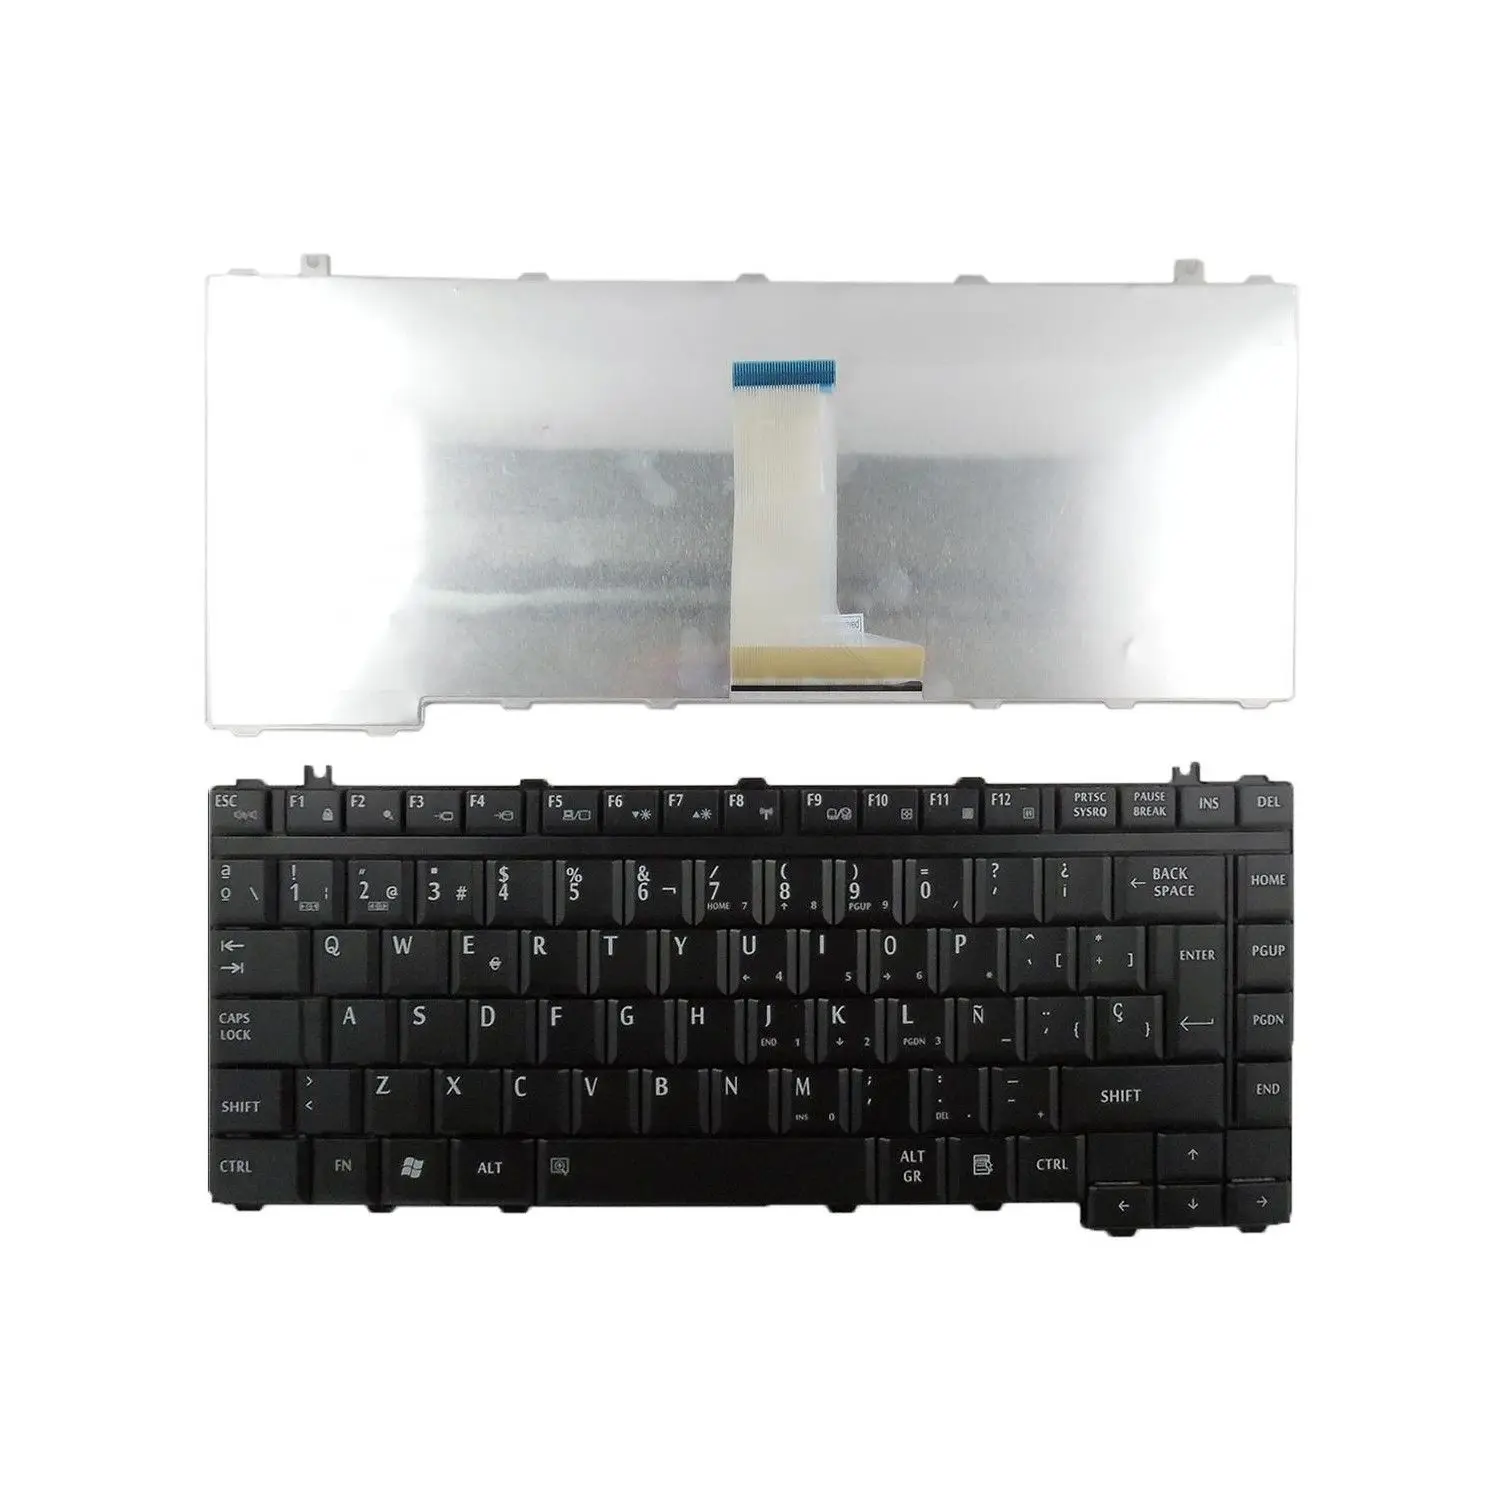 New US Black English Laptop Keyboard Replacement for Toshiba Satellite A215-S4697 A215-S4717 A215-S4737 A215-S4747 A215-S4757 A215-S4767 A215-S4807 A215-S4817 A215-S48171 A215-S5802 A215-S5807